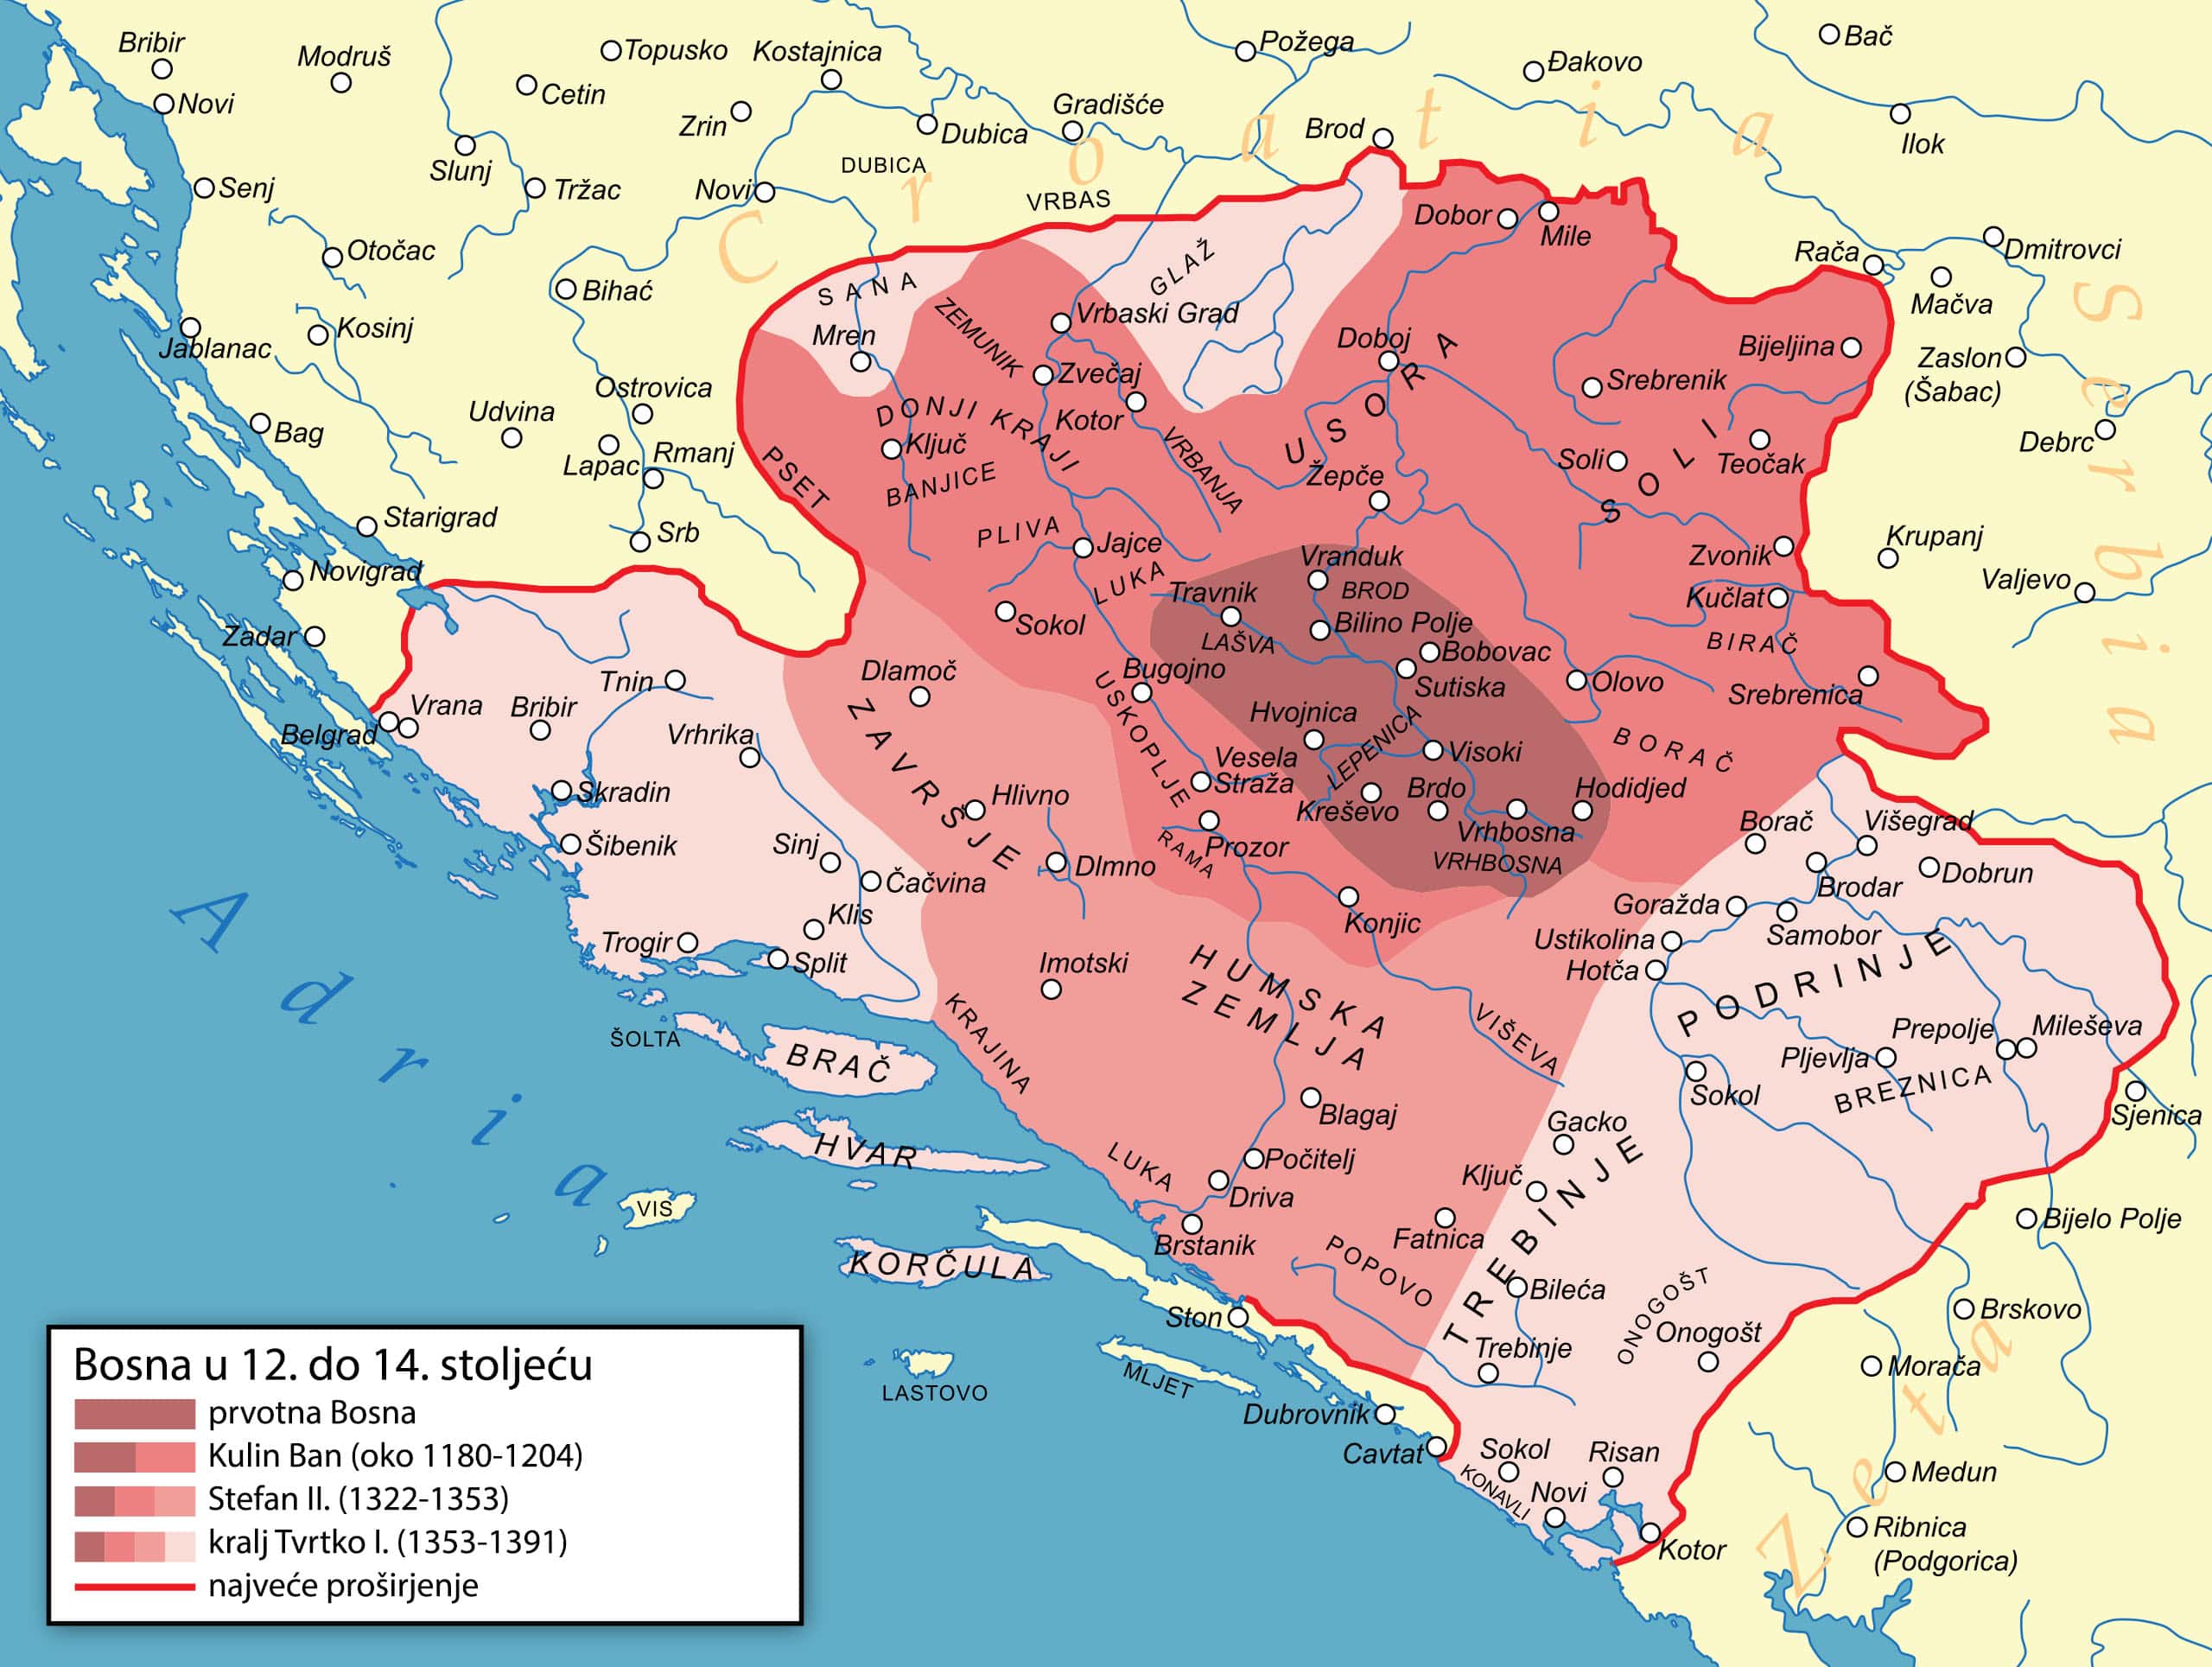 Proširenje Kraljevine Bosne od 12. do 14. stoljeća